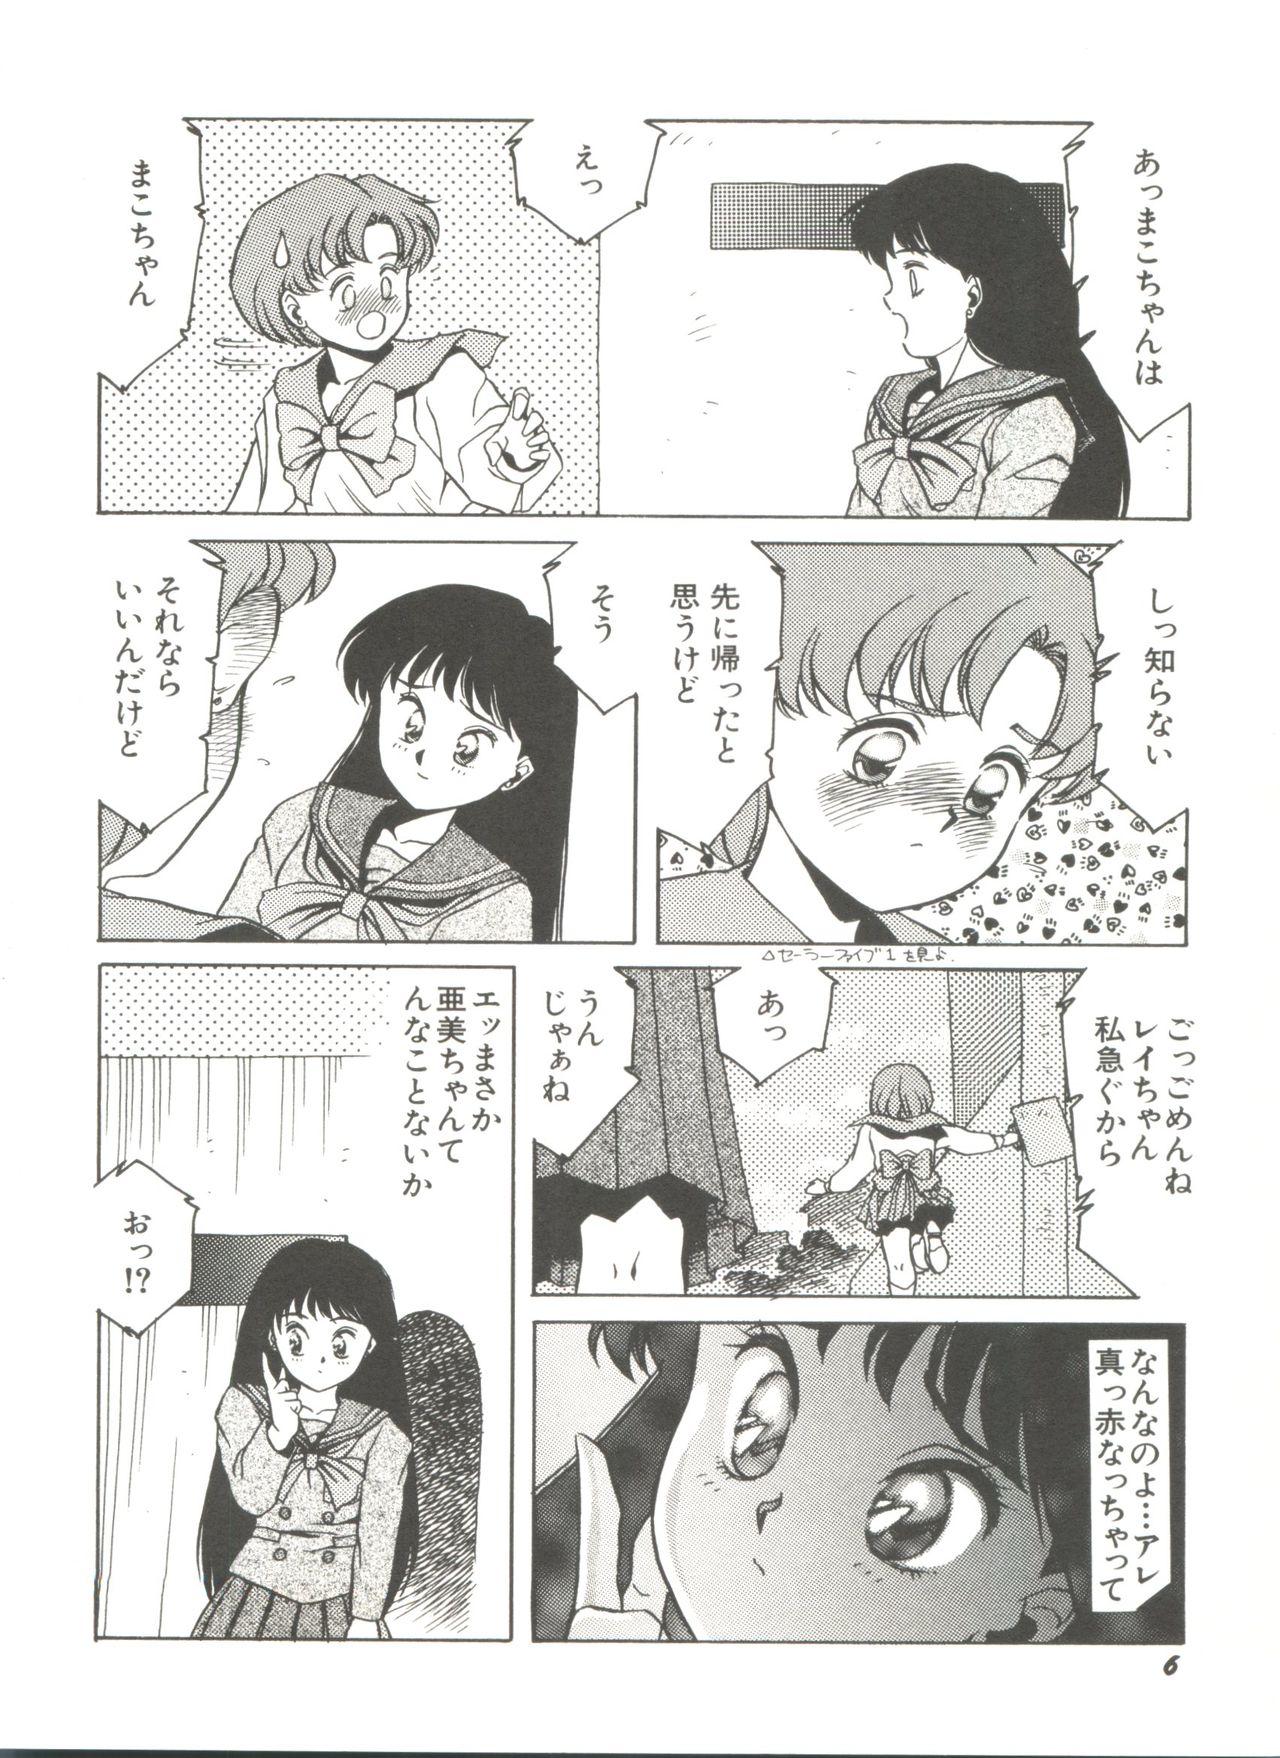 Celebrity Porn Bishoujo Doujinshi Anthology 2 - Moon Paradise 1 Tsuki no Rakuen - Sailor moon Big Black Cock - Page 9